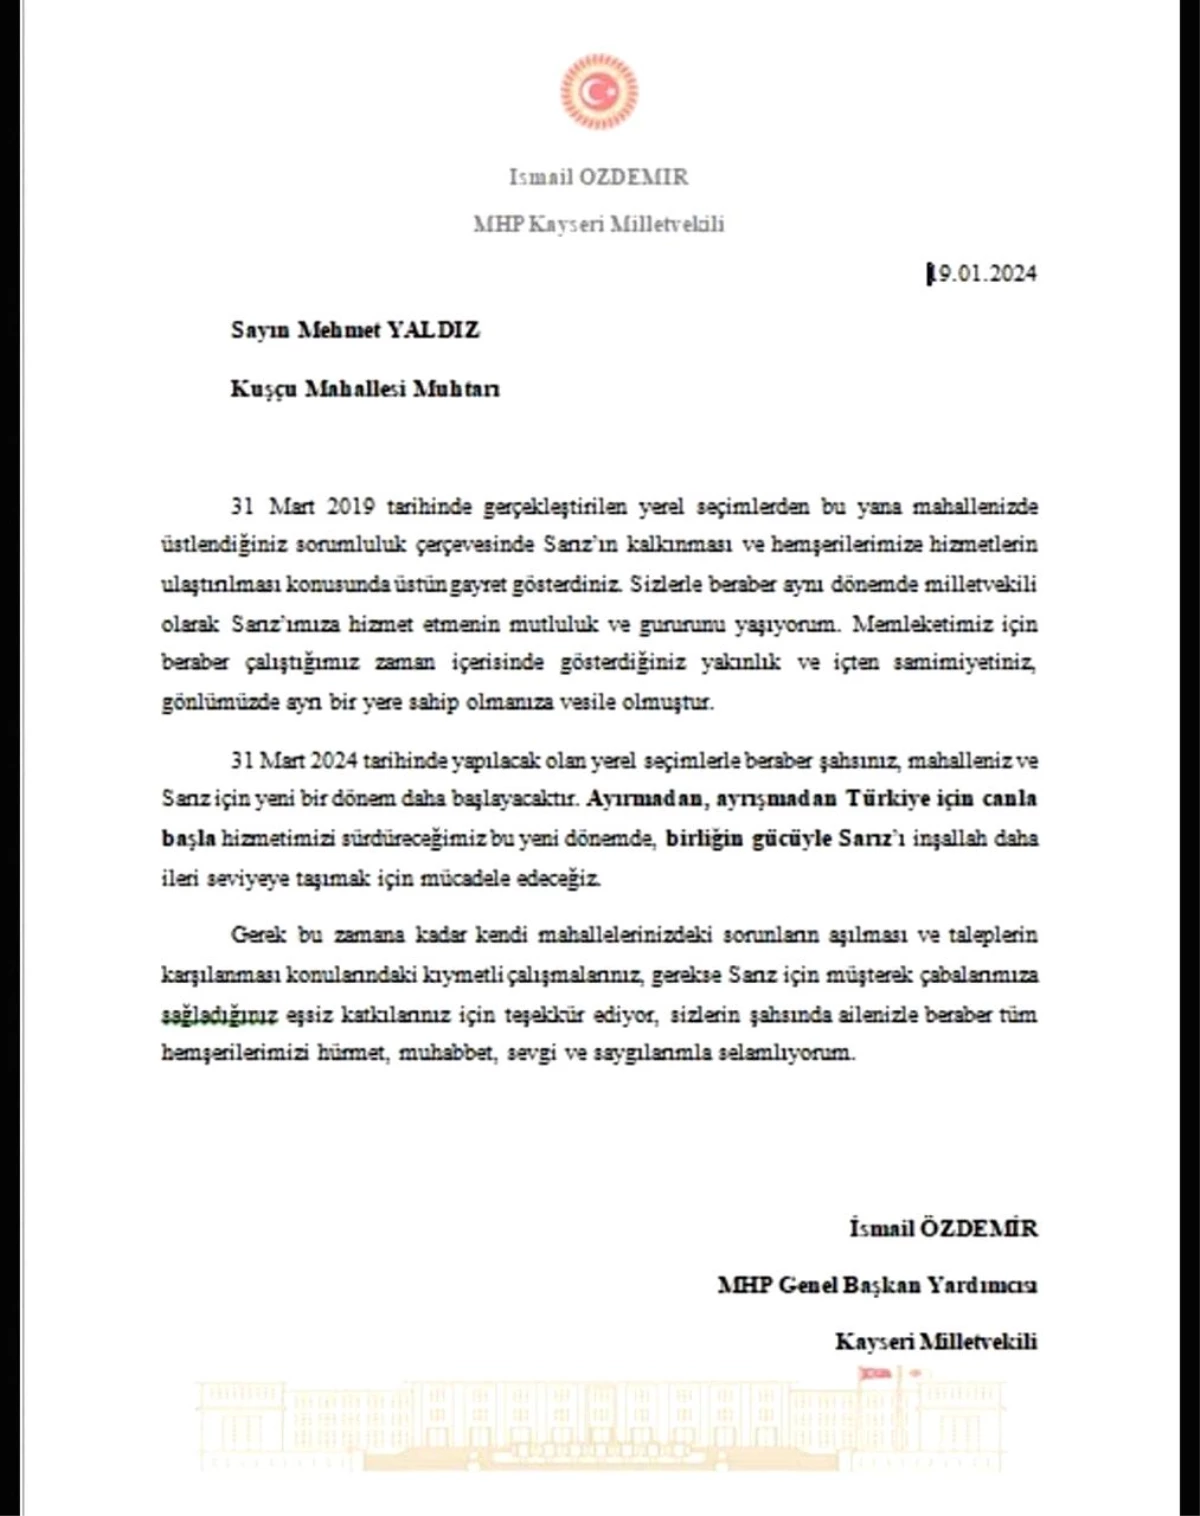 MHP Genel Başkan Yardımcısı İsmail Özdemir, MHP\'li belediyelerin bulunduğu ilçelerdeki muhtarlara teşekkür mektubu gönderdi